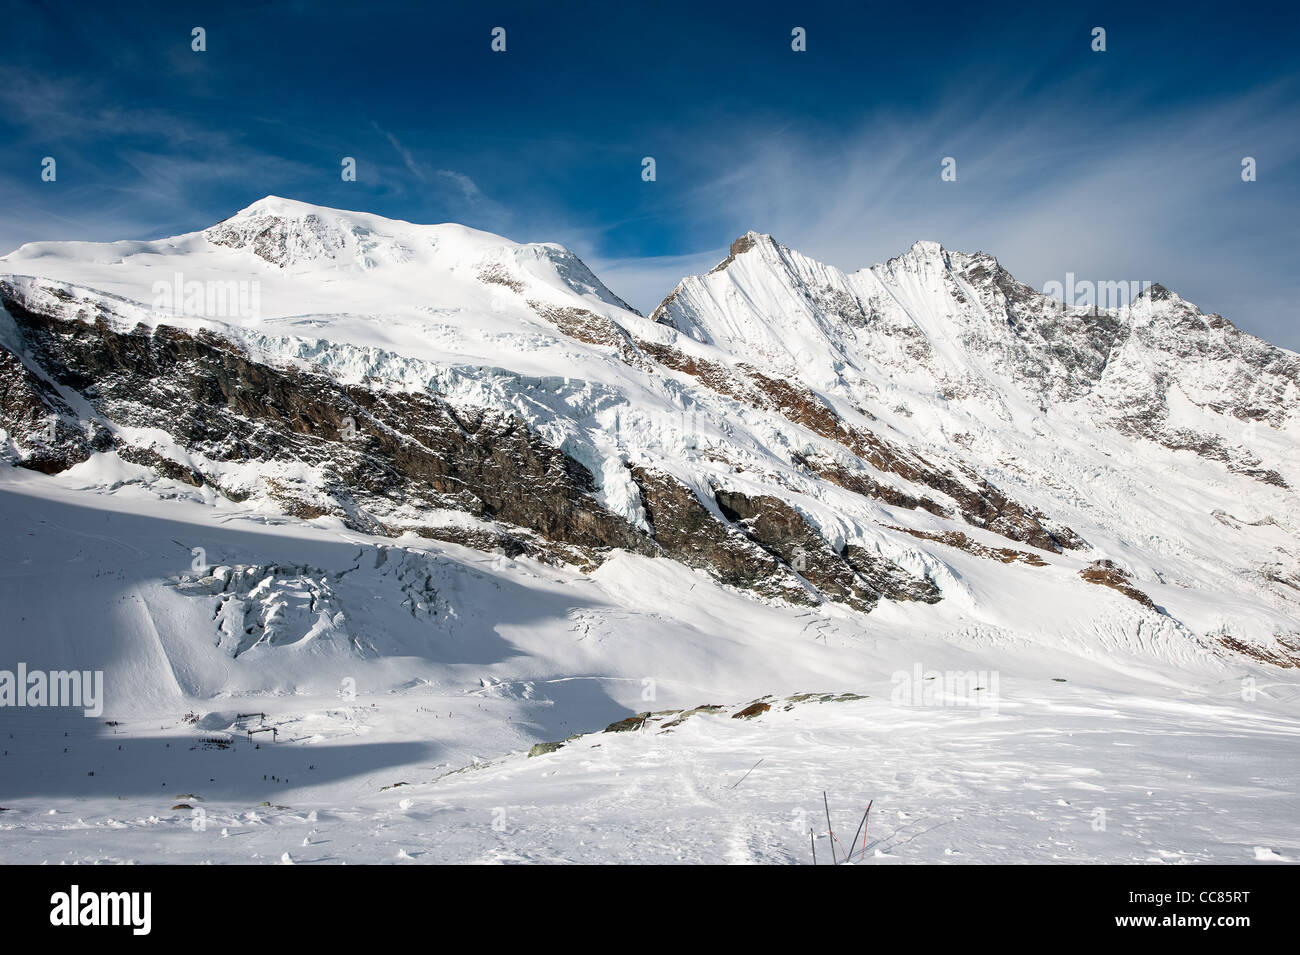 Vue panoramique de Mittelallalin les sommets des montagnes (Alphubel, Dom, Taeschorn) à la Saas Fee en hiver, Suisse Banque D'Images